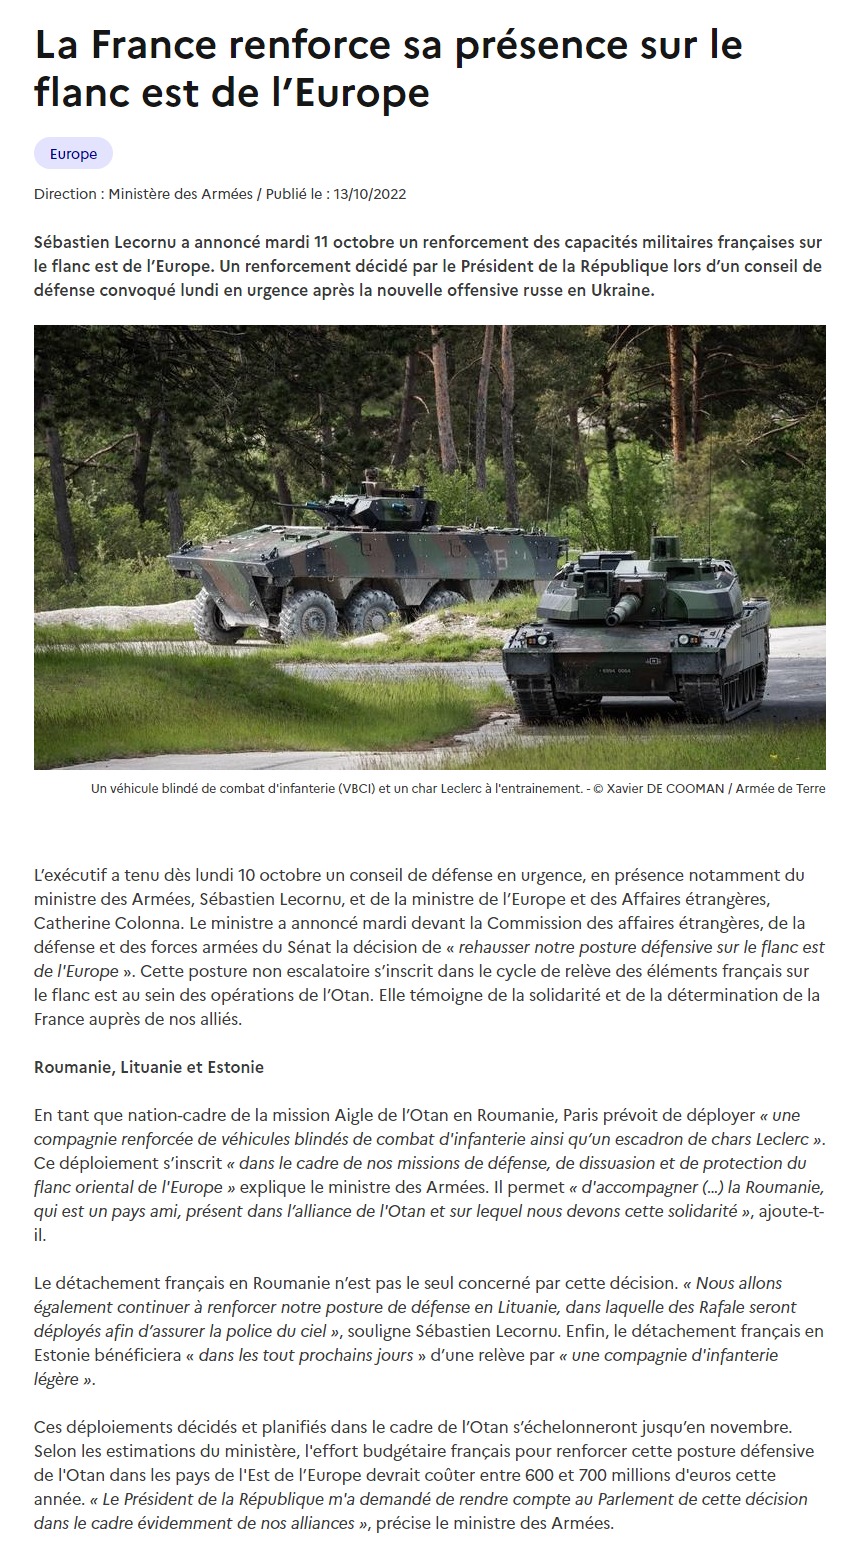 Скриншот с сайта Министерства вооруженных сил Франции